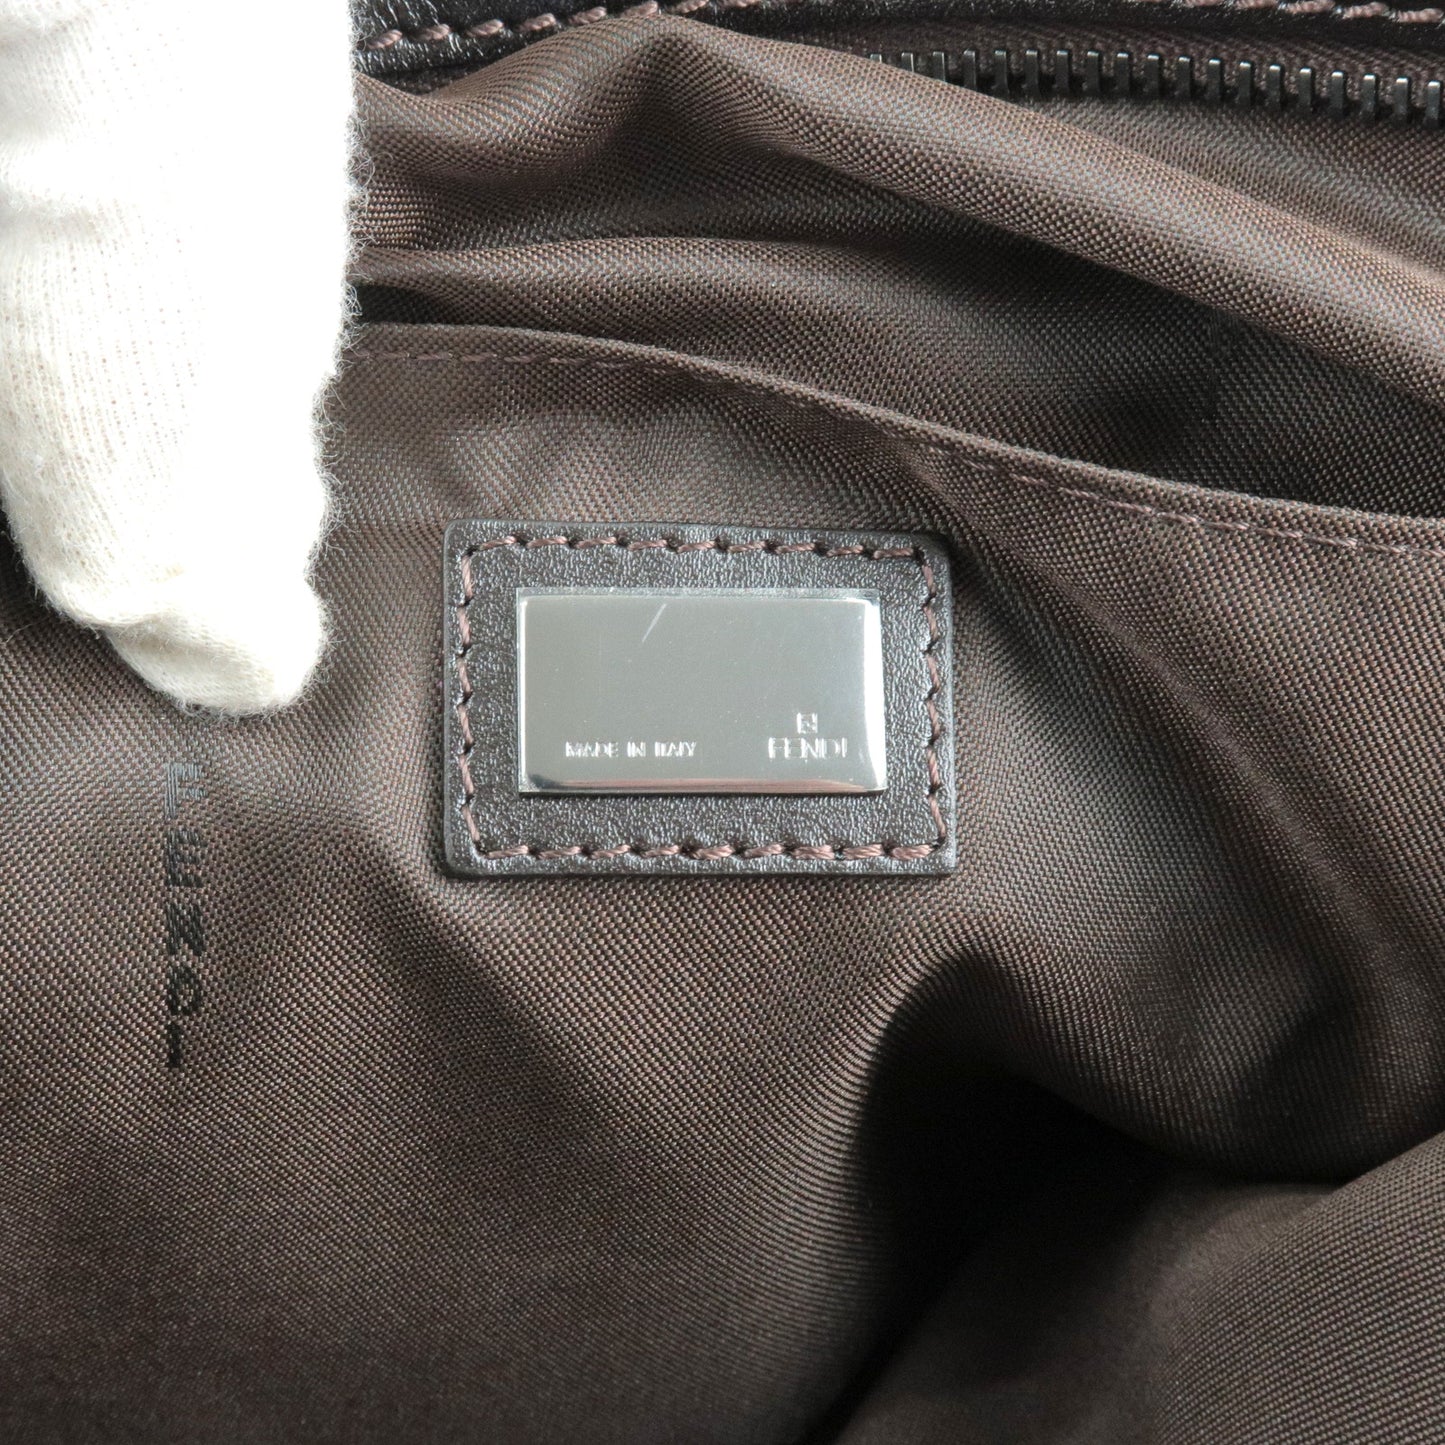 FENDI Zucchino Canvas Leather Shoulder Bag Beige Brown 8BT080